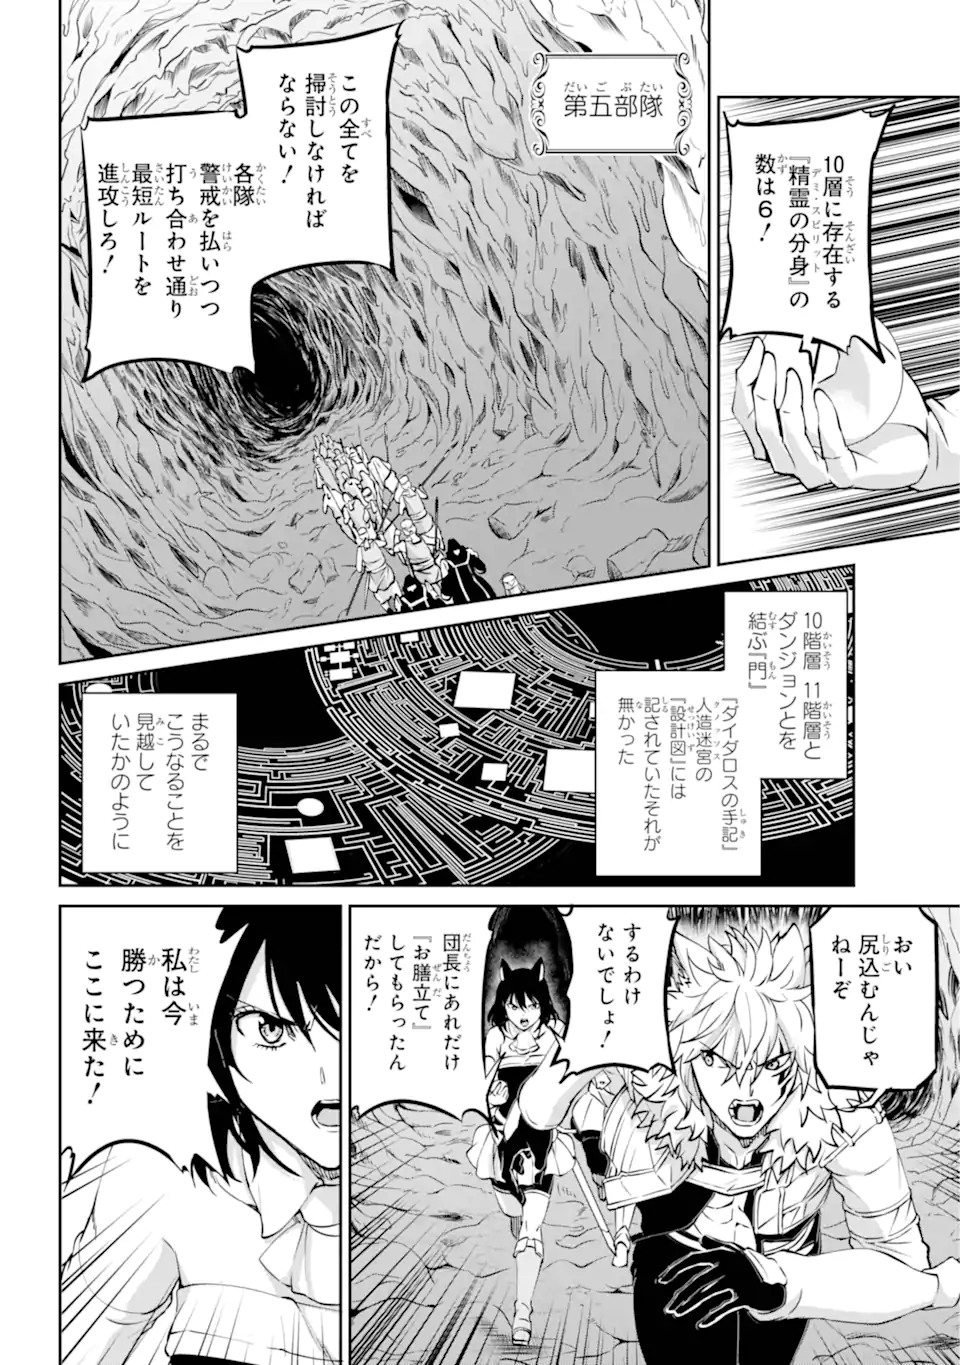 Dungeon ni Deai wo Motomeru no wa Machigatte Iru Darou ka Gaiden - Sword Oratoria - Chapter 116.3 - Page 1